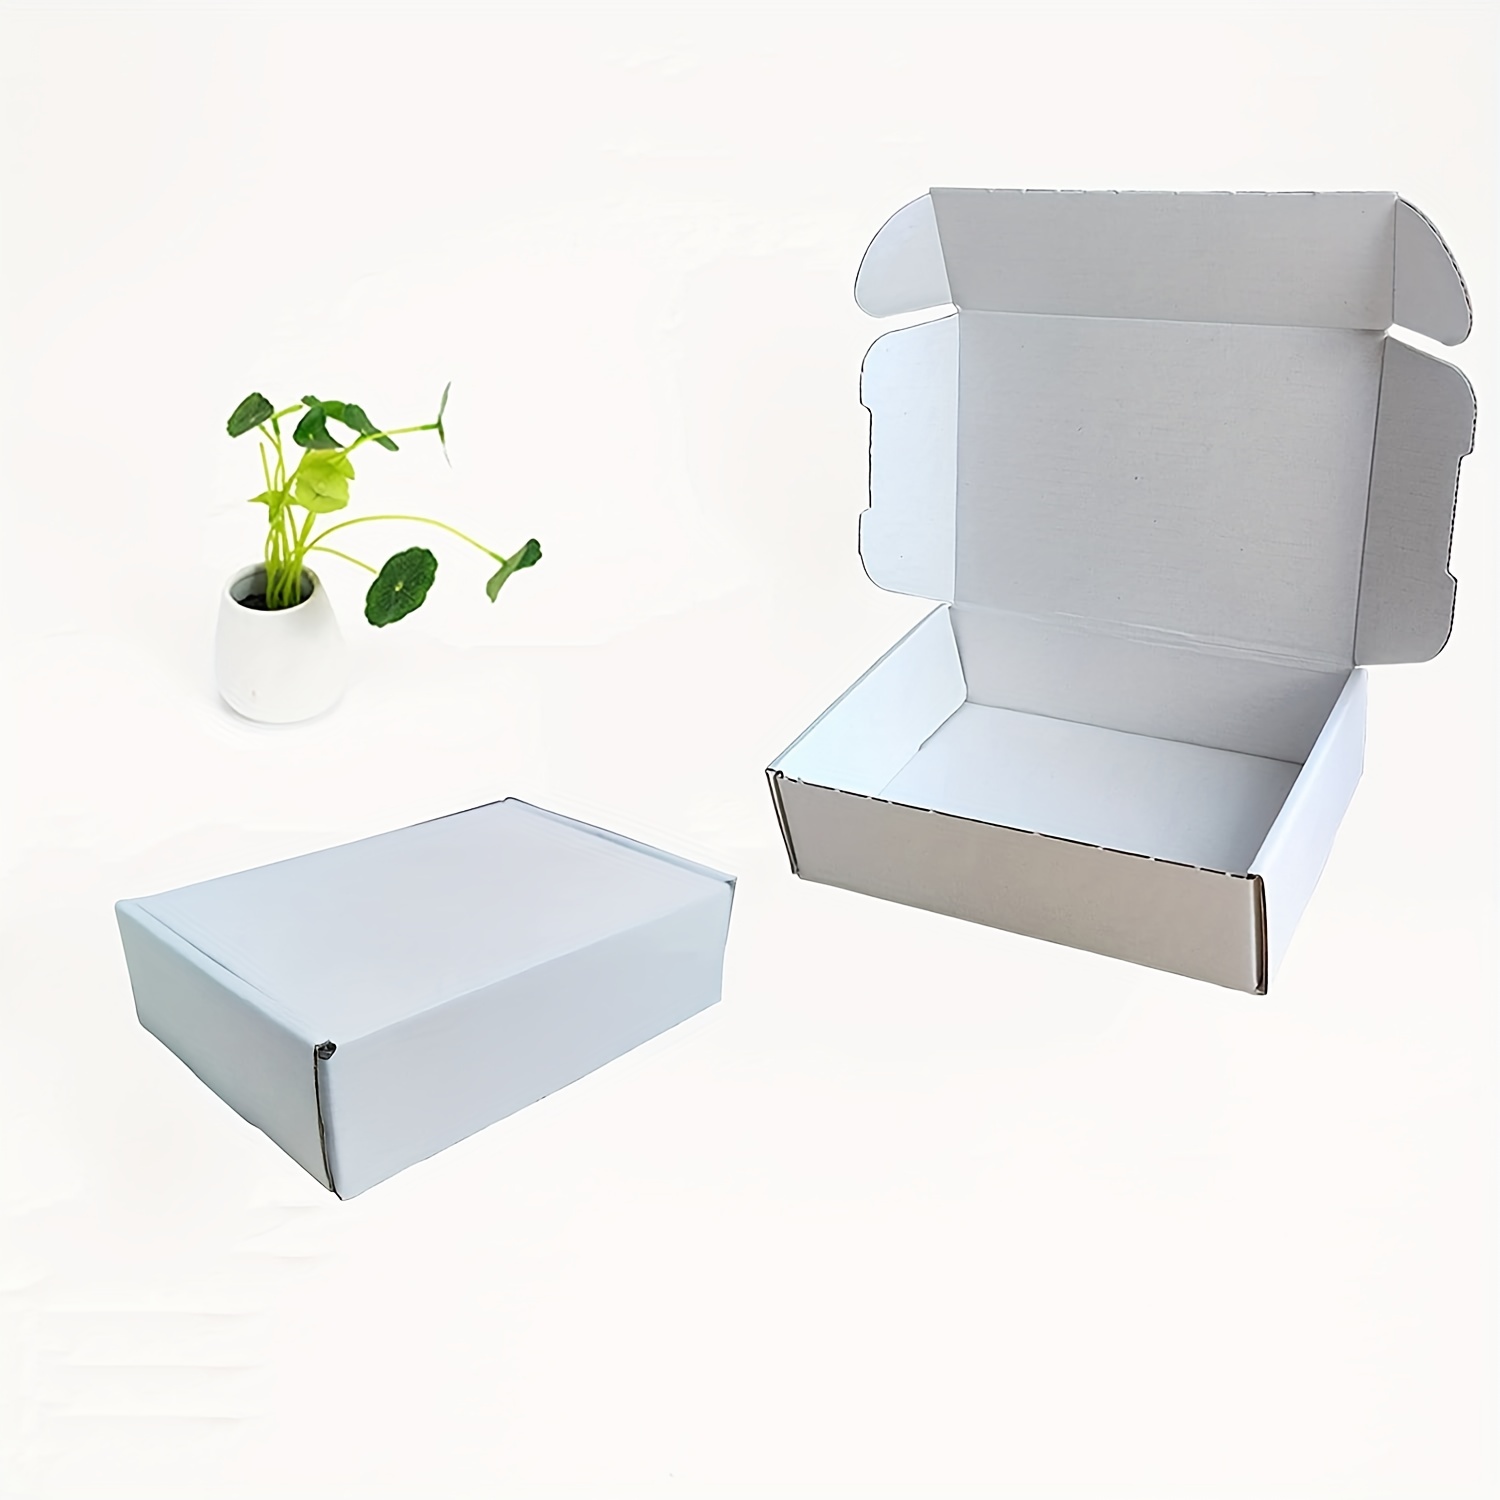  Cajas para mudanza tamaño grande, 20x20x15 pulgadas (paquete  económico de 6) cajas para embalaje / envíos / almacenamiento : Productos de  Oficina